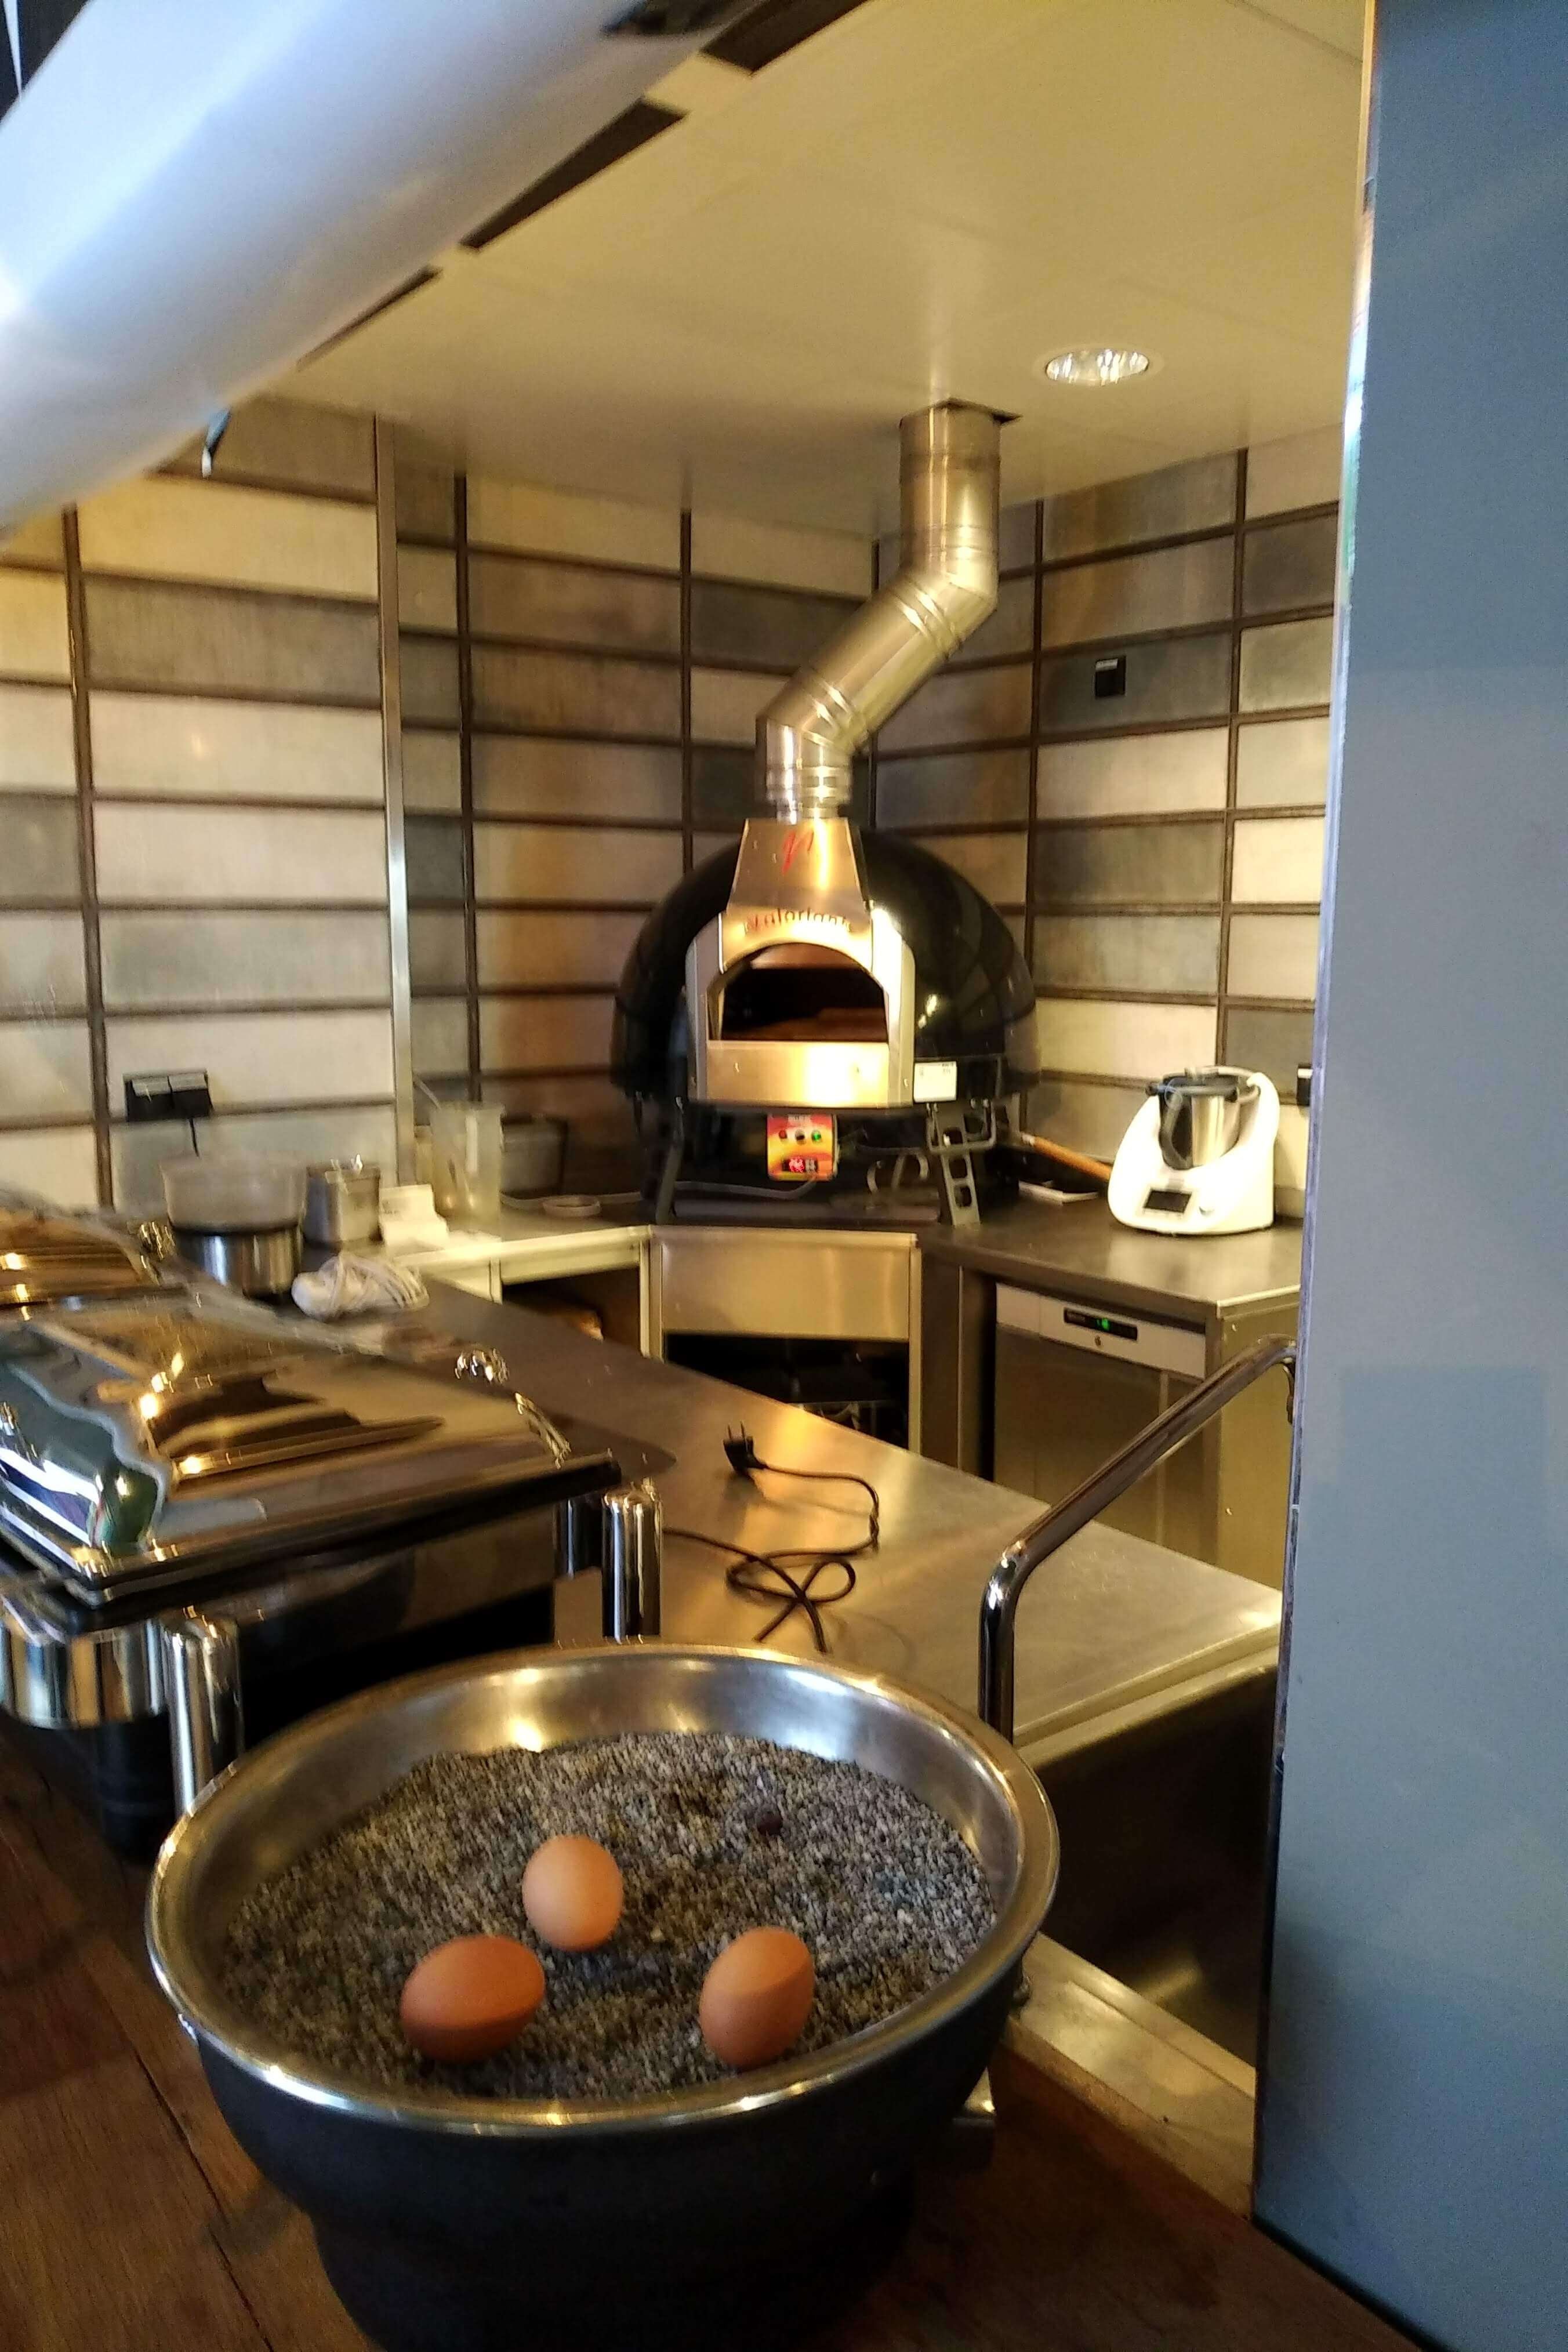 Holzbackofen Valoriani Baby: Pizzaofen mit 75cm Durchmesser, tabletop, schwarz